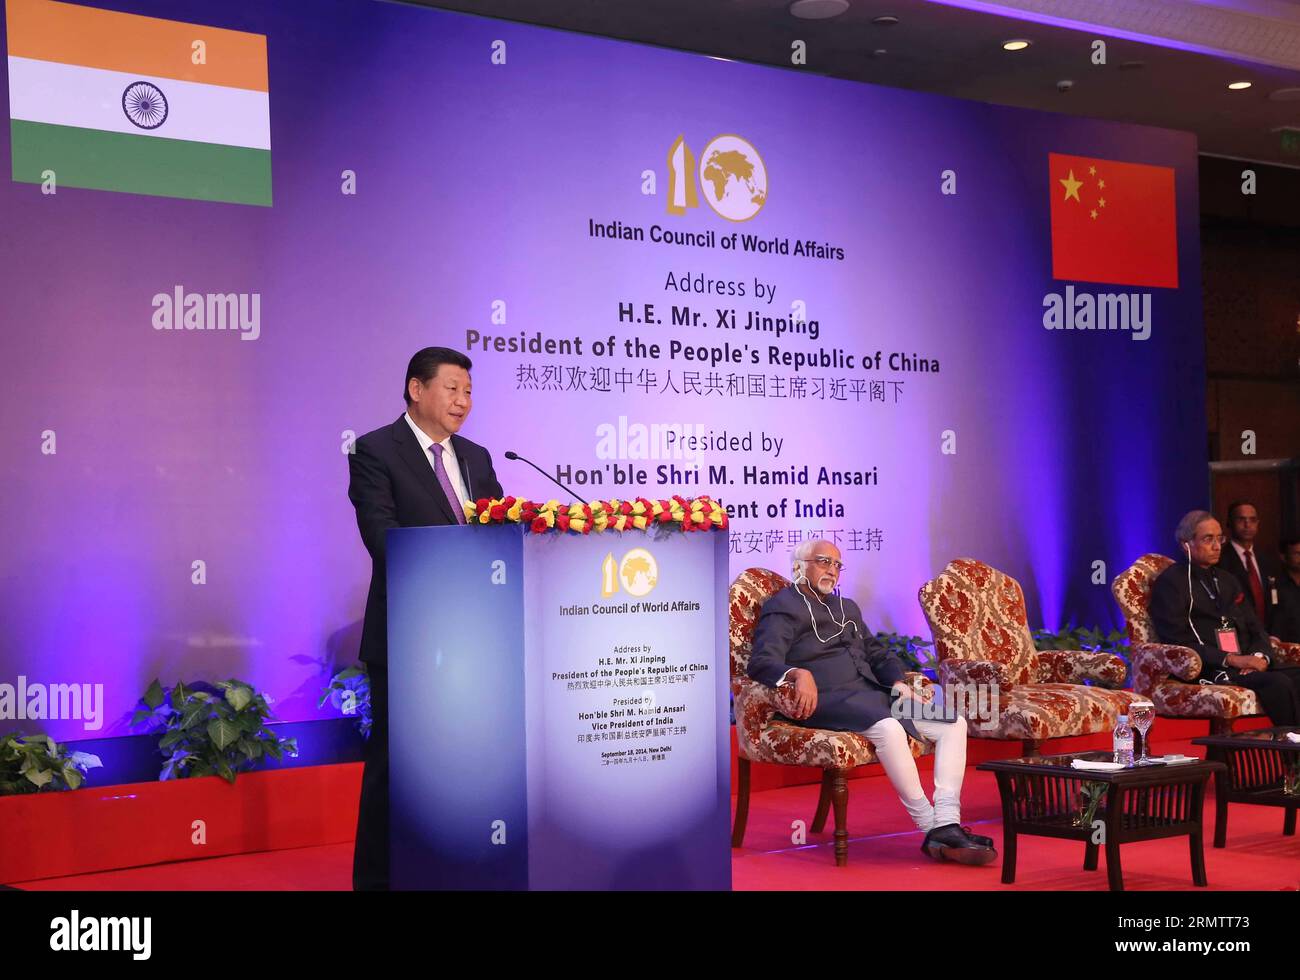 (140918) -- NUOVA DELHI, 18 settembre 2014 -- il presidente cinese Xi Jinping tiene un discorso al Consiglio indiano degli affari mondiali a nuova Delhi, India, 18 settembre 2014. ) (hdt) INDIA-NEW DELHI-CHINA-XI JINPING-SPEECH PangxXinglei PUBLICATIONxNOTxINxCHN New Delhi 18 settembre 2014 il presidente cinese Xi Jinping tiene un discorso AL Consiglio indiano degli affari mondiali a nuova Delhi India 18 settembre 2014 HDT India New Delhi Cina Xi Jinping Speech PangxXinglei PUBLICATIONxTxINxCHN Foto Stock